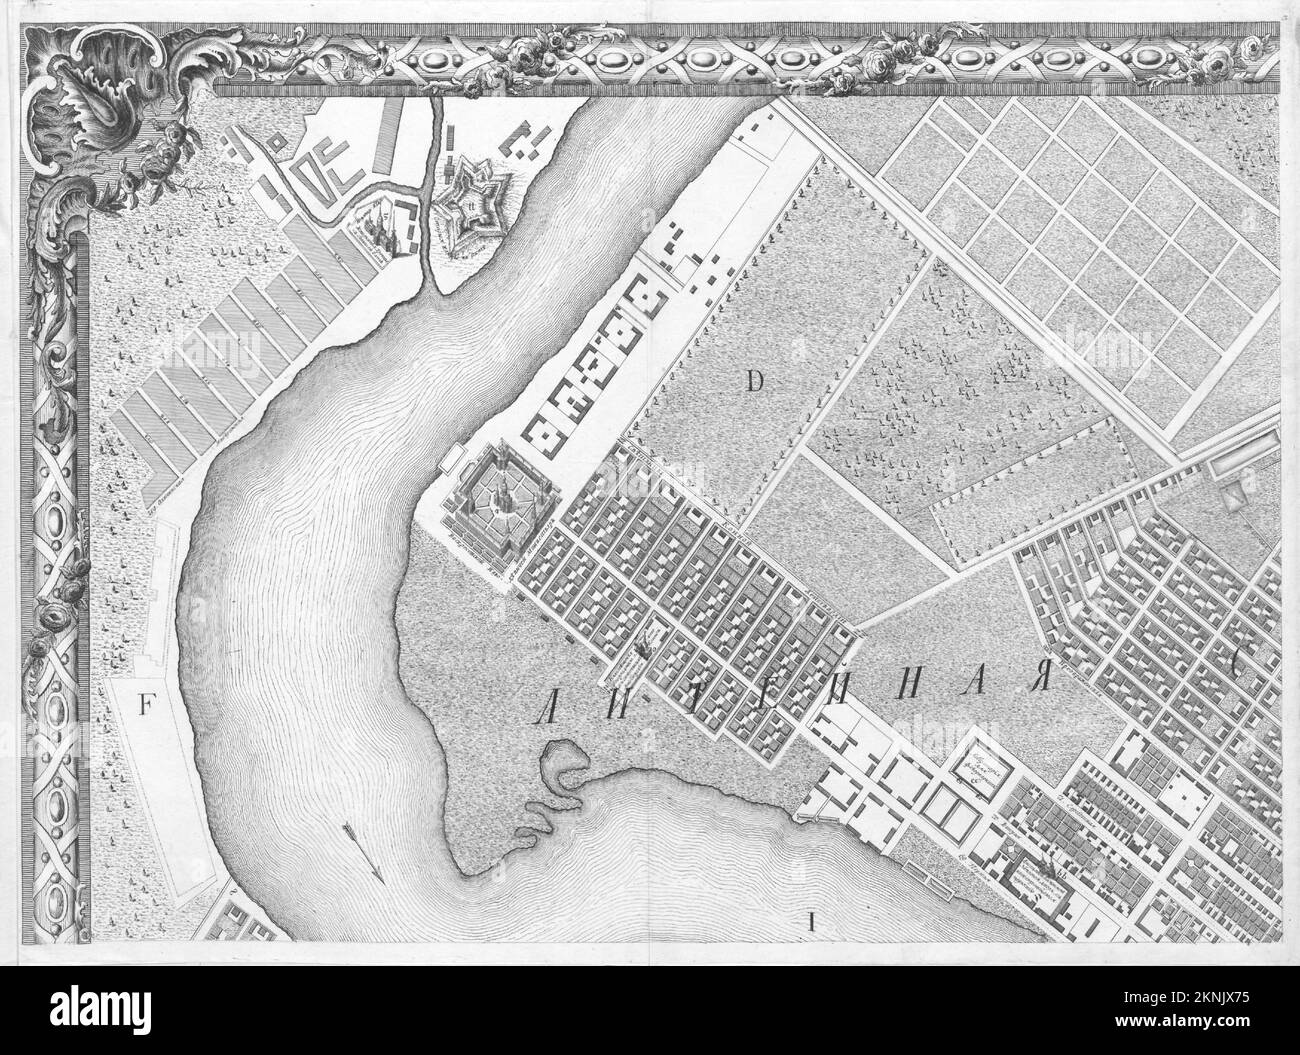 Plan de ville vintage de Saint-Pétersbourg et de la région autour de lui à partir de 18th siècle. Les cartes sont magnifiquement illustrées à la main et gravées le montrant à l'époque. Banque D'Images